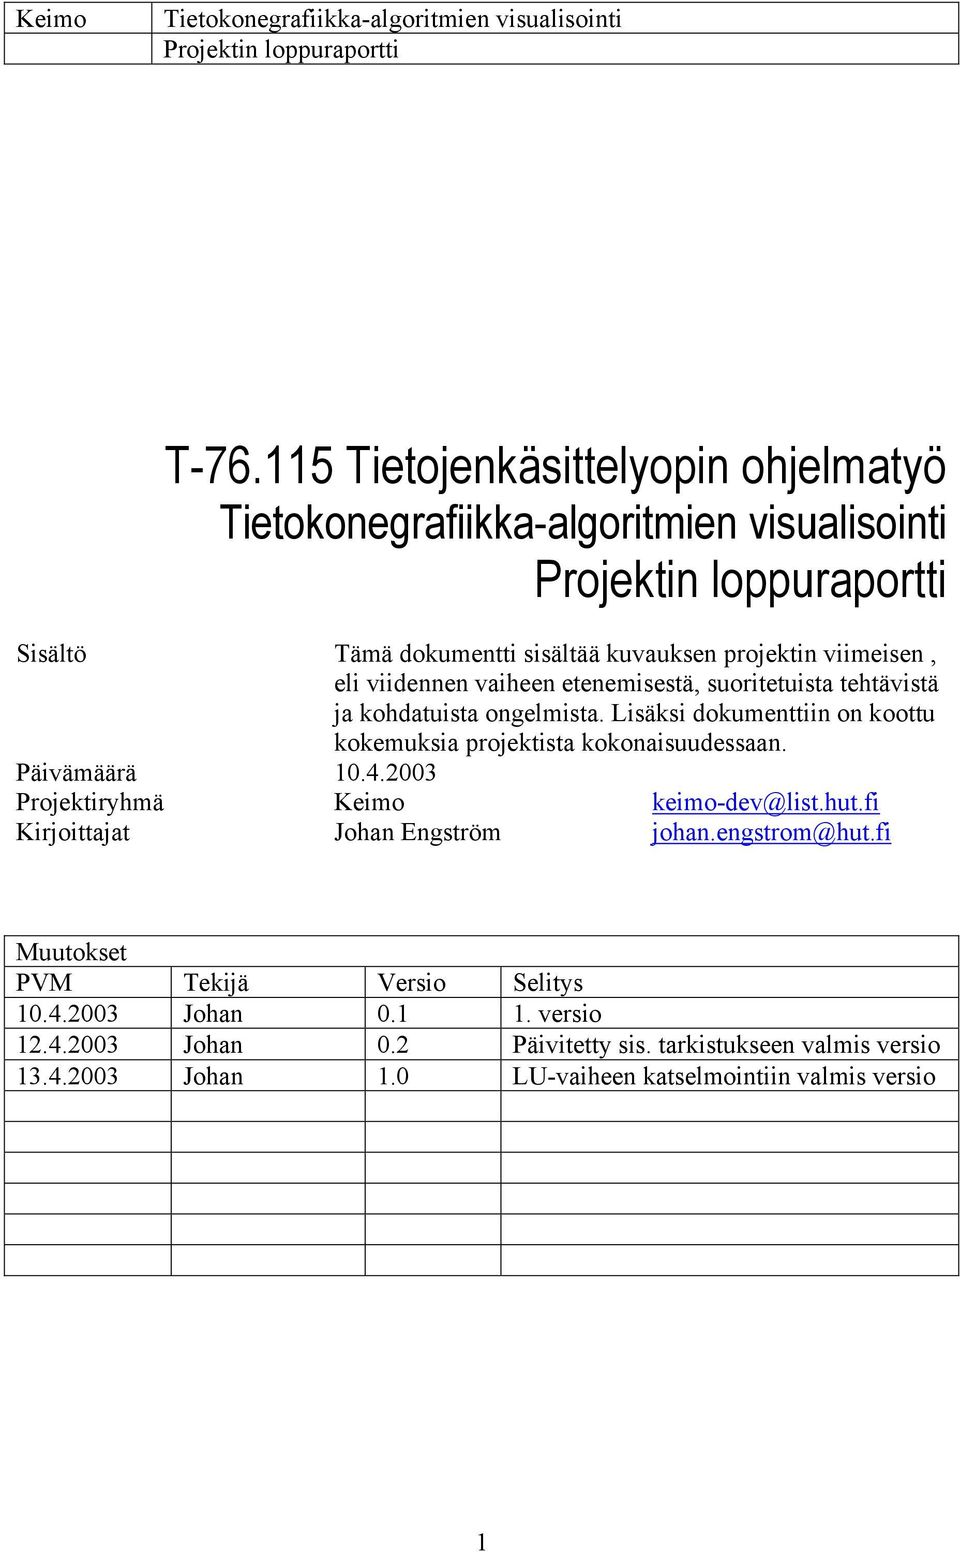 2003 Projektiryhmä Keimo keimo-dev@list.hut.fi Kirjoittajat Johan Engström johan.engstrom@hut.fi Muutokset PVM Tekijä Versio Selitys 10.4.